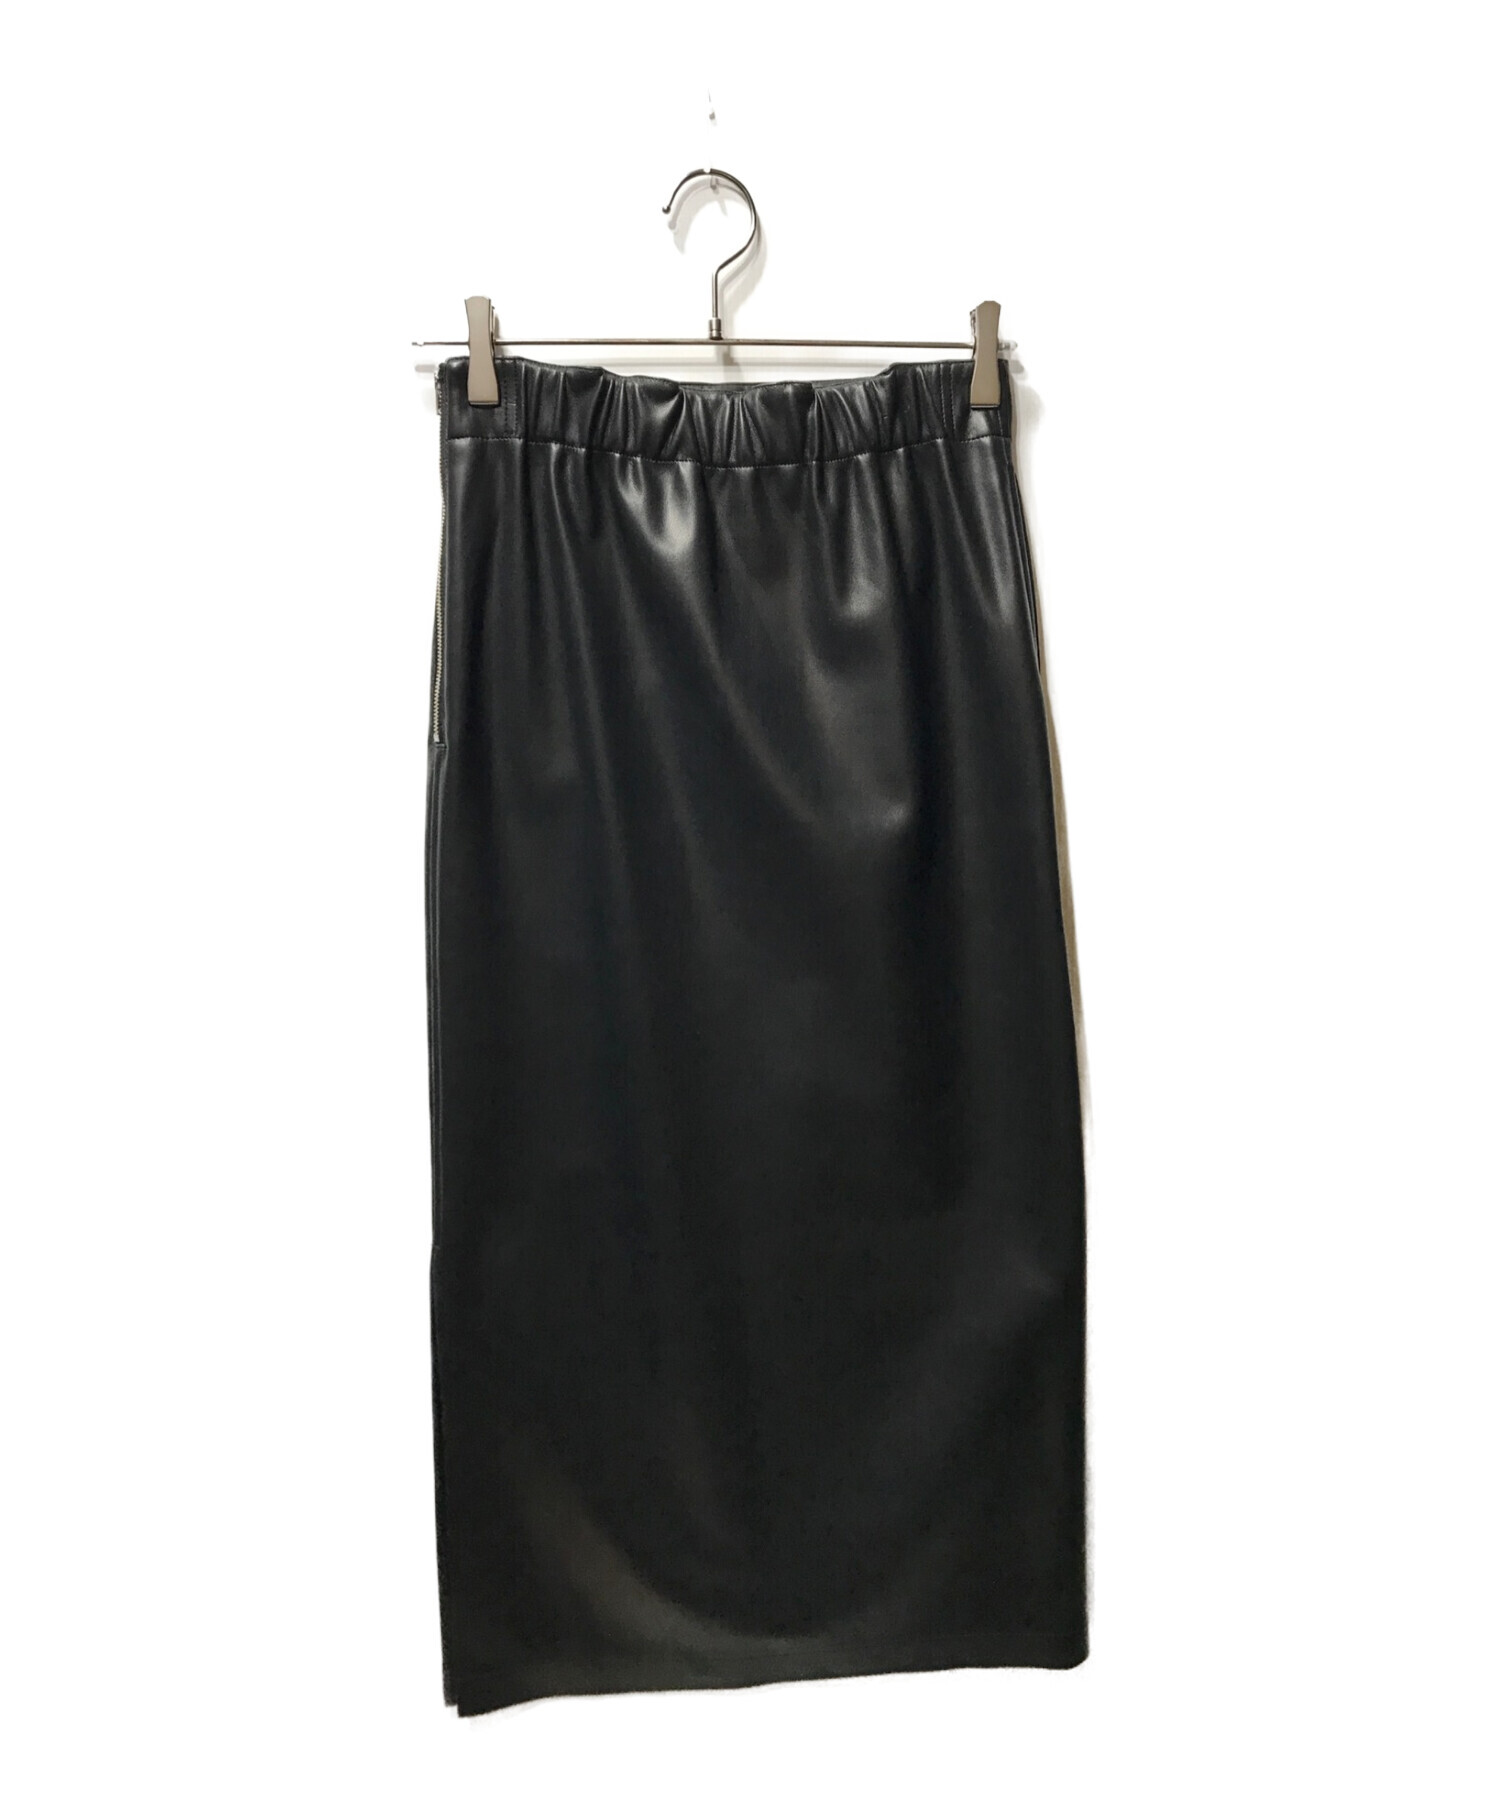 MACPHEE (マカフィー) フェイクレザー Iラインロングスカート ブラック サイズ:34